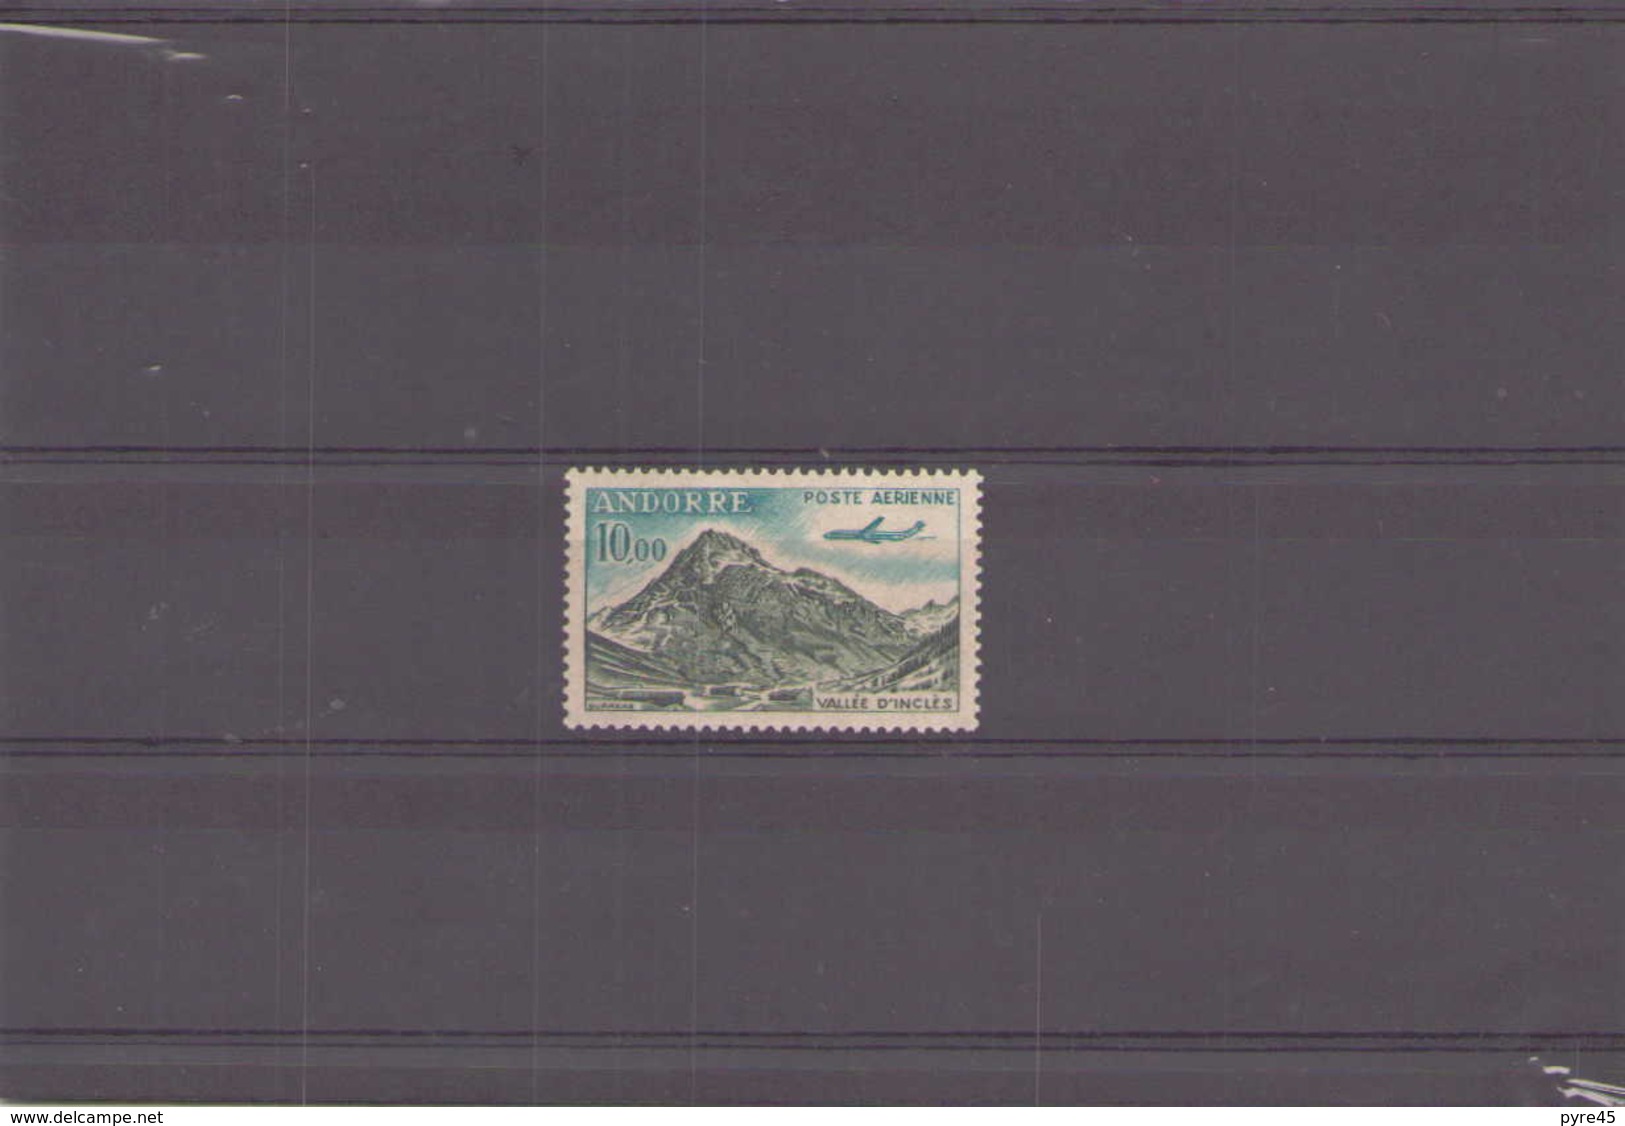 Andorre 1961 / 4 Poste Aerienne N° 8 ** - Luftpost